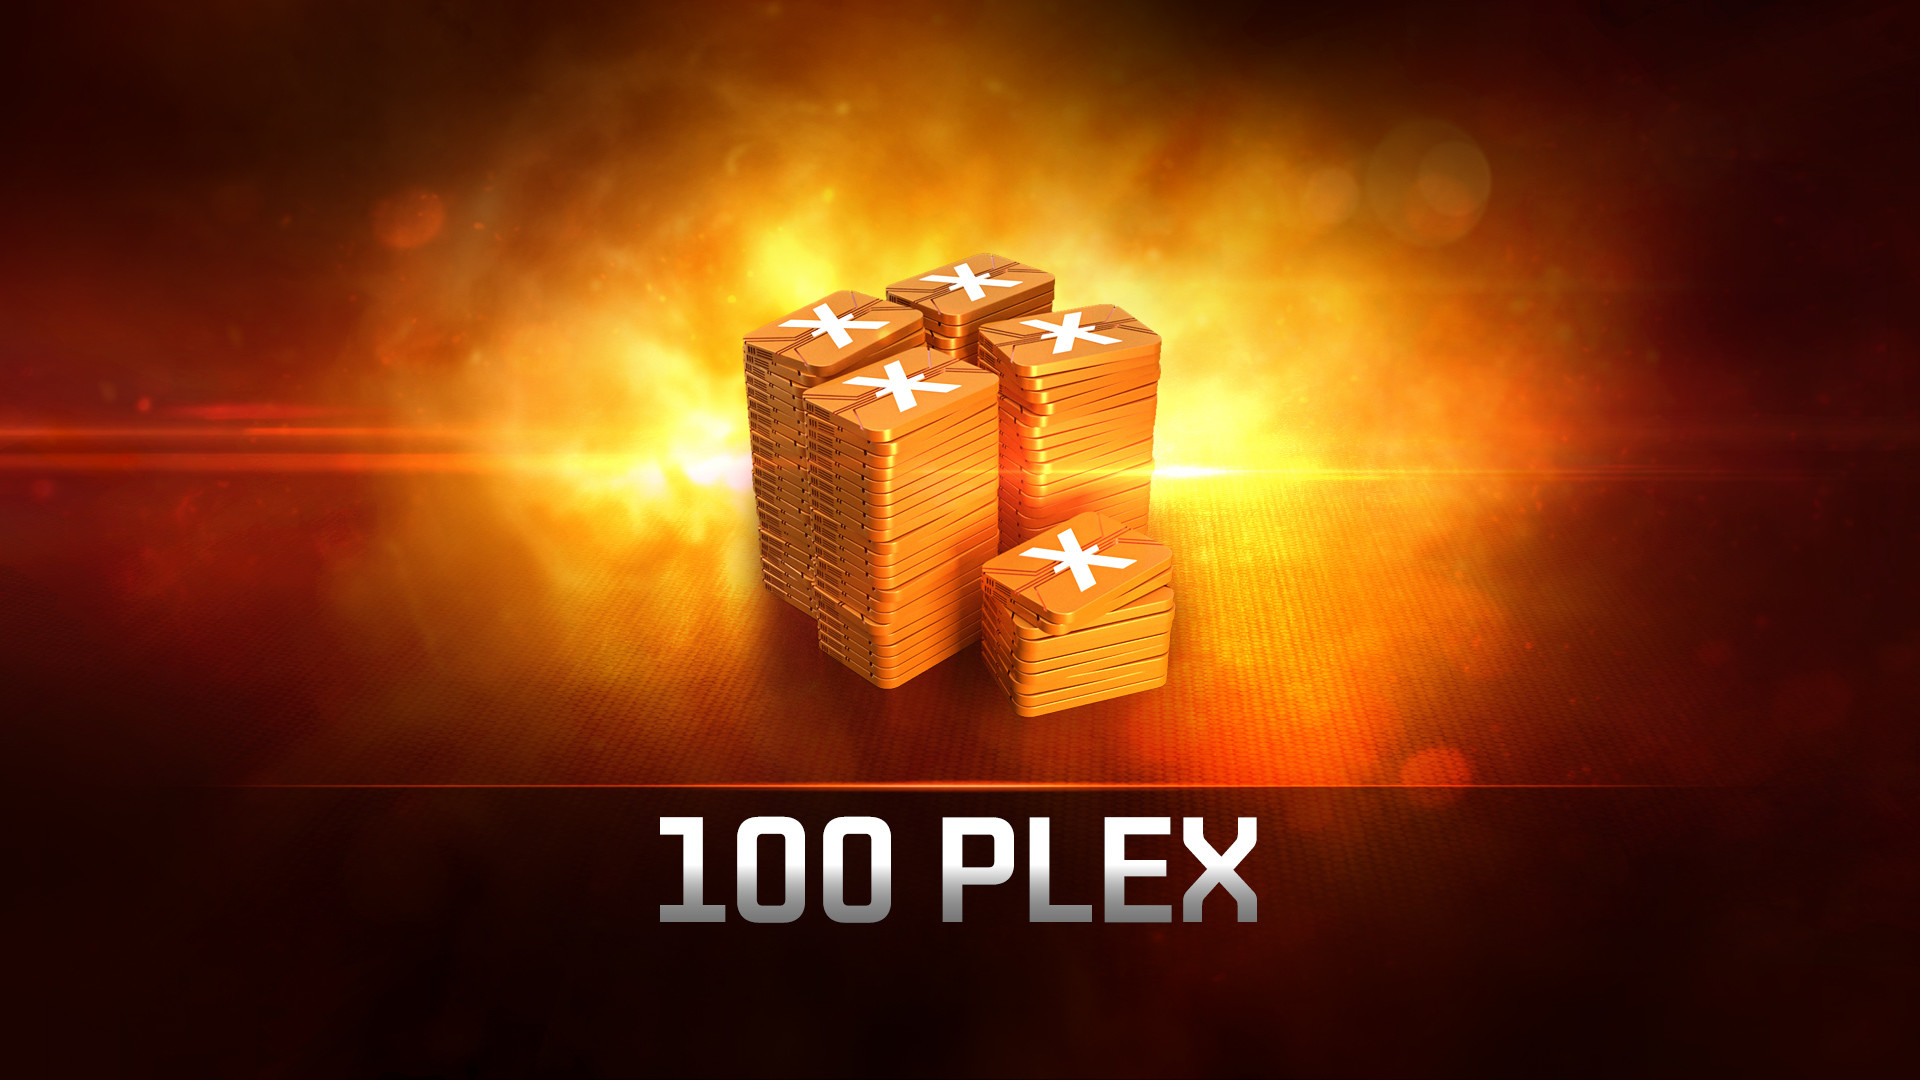 EVE Online: 100 PLEX Steam Altergift [USD 6.81]